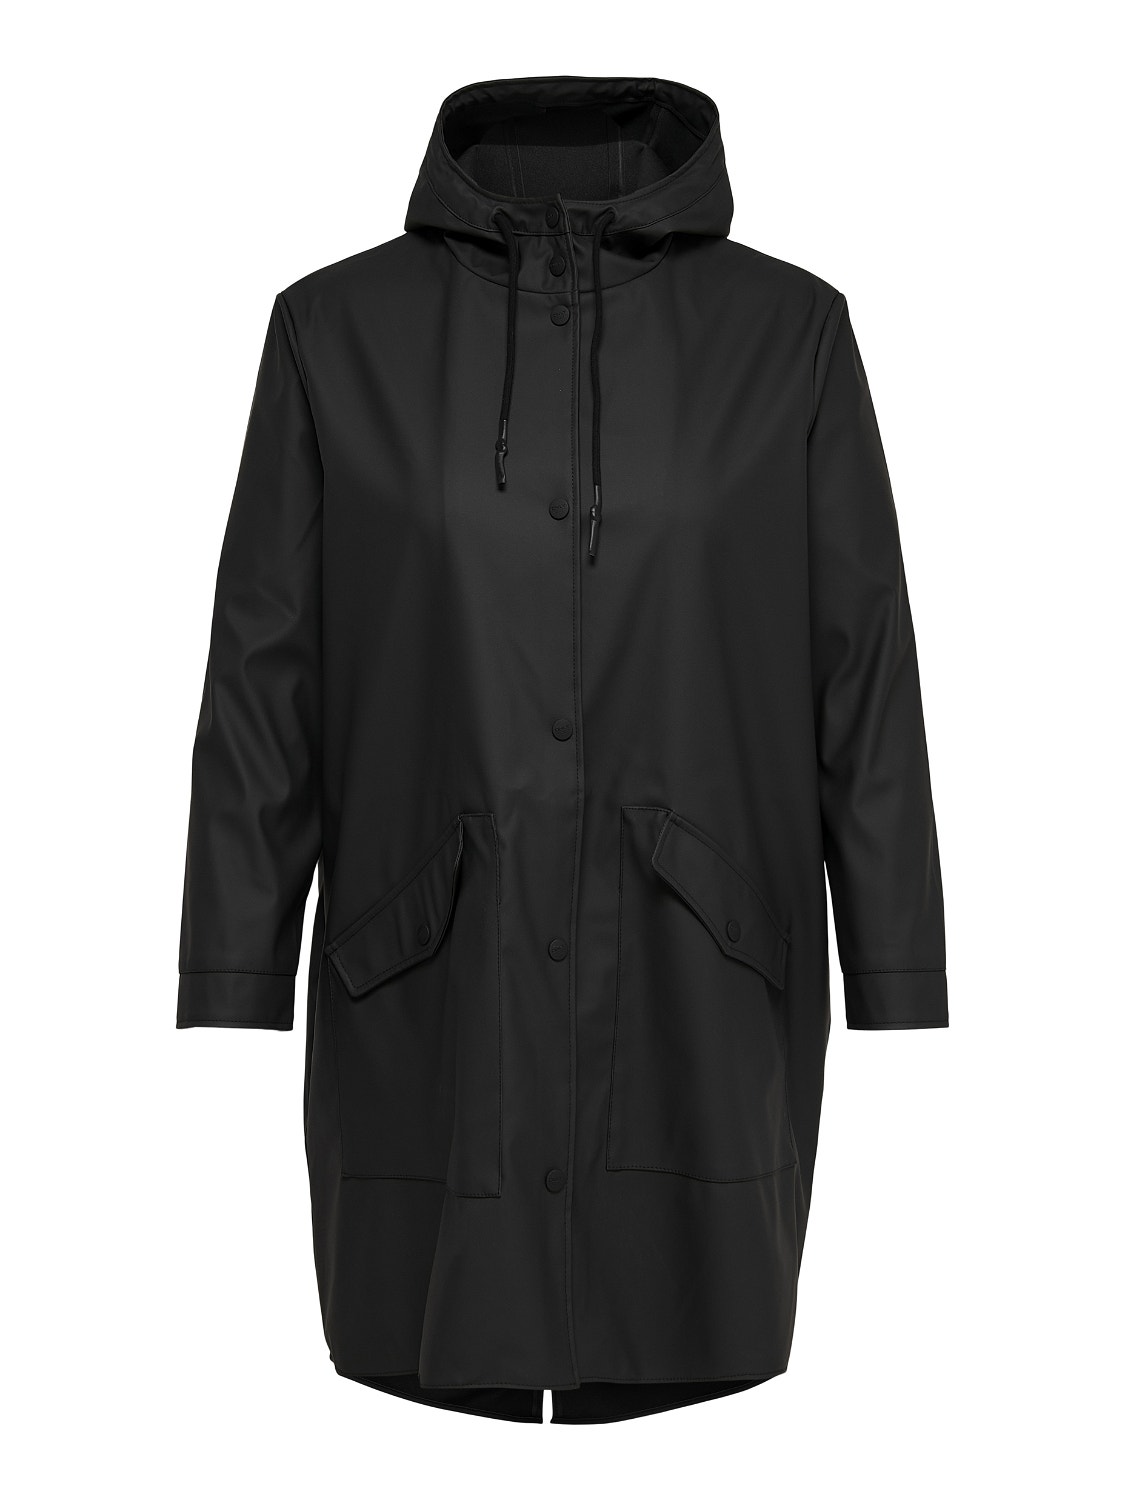 ONLY Curvy Rain jacket -Black - 15217091